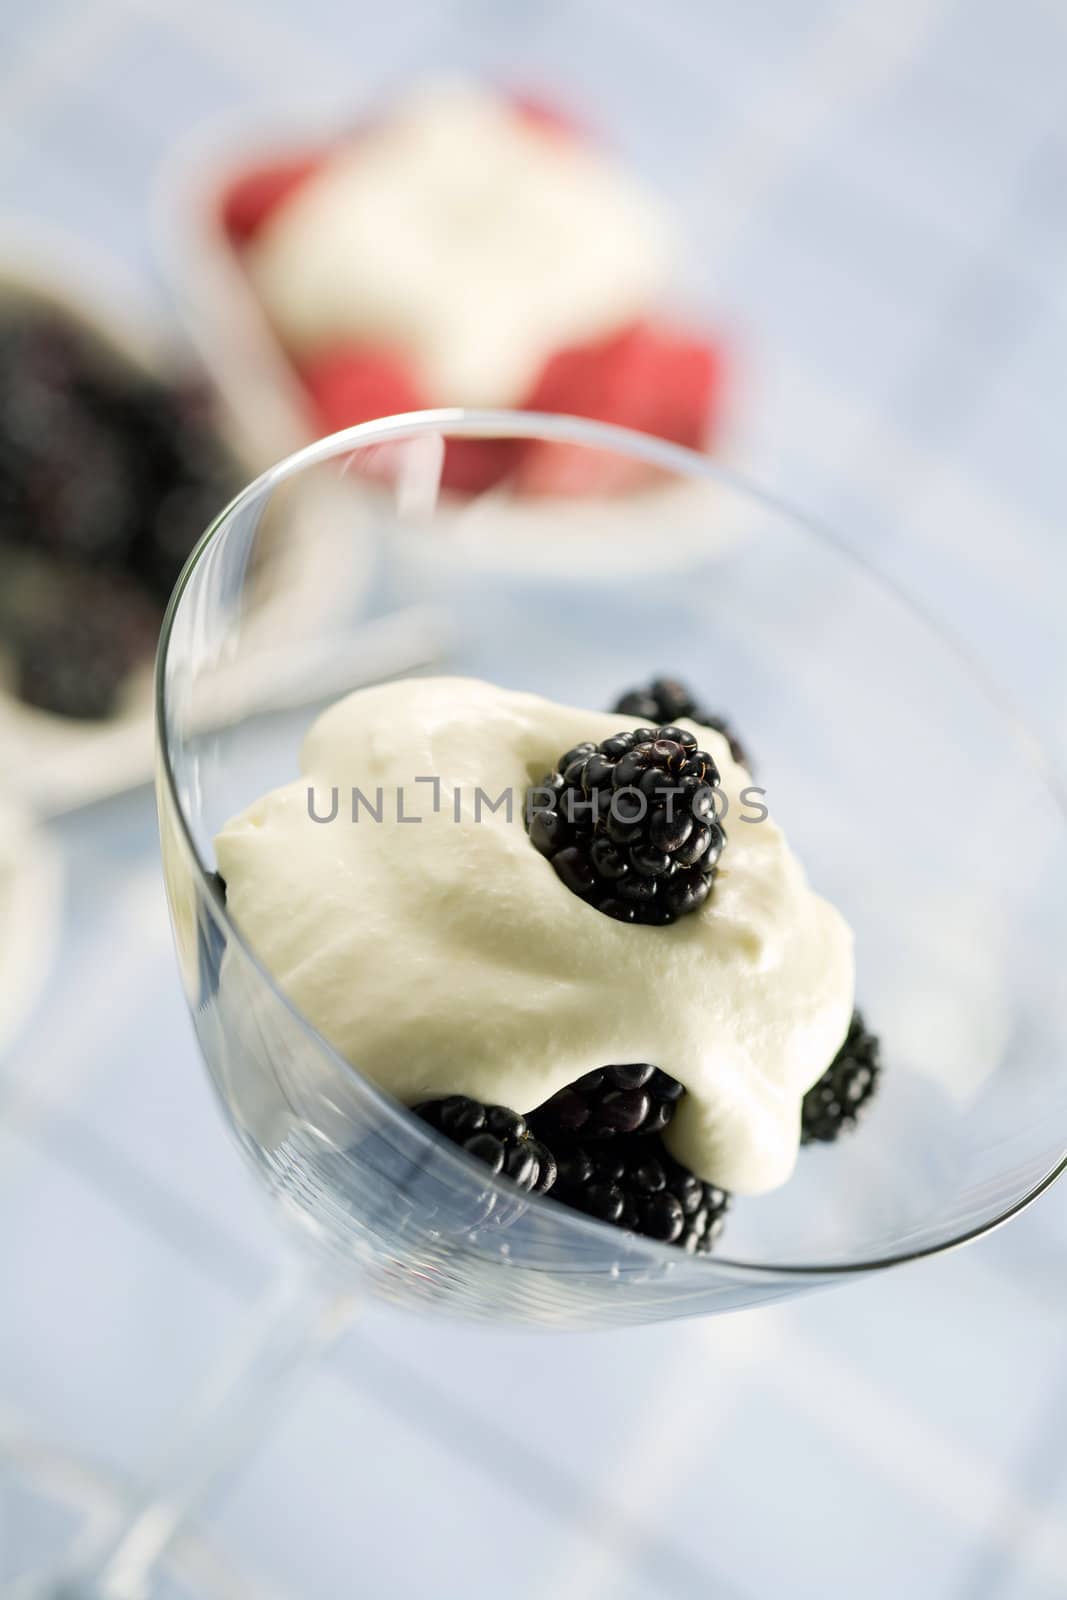 Delicious blackberry dessert by Fotosmurf